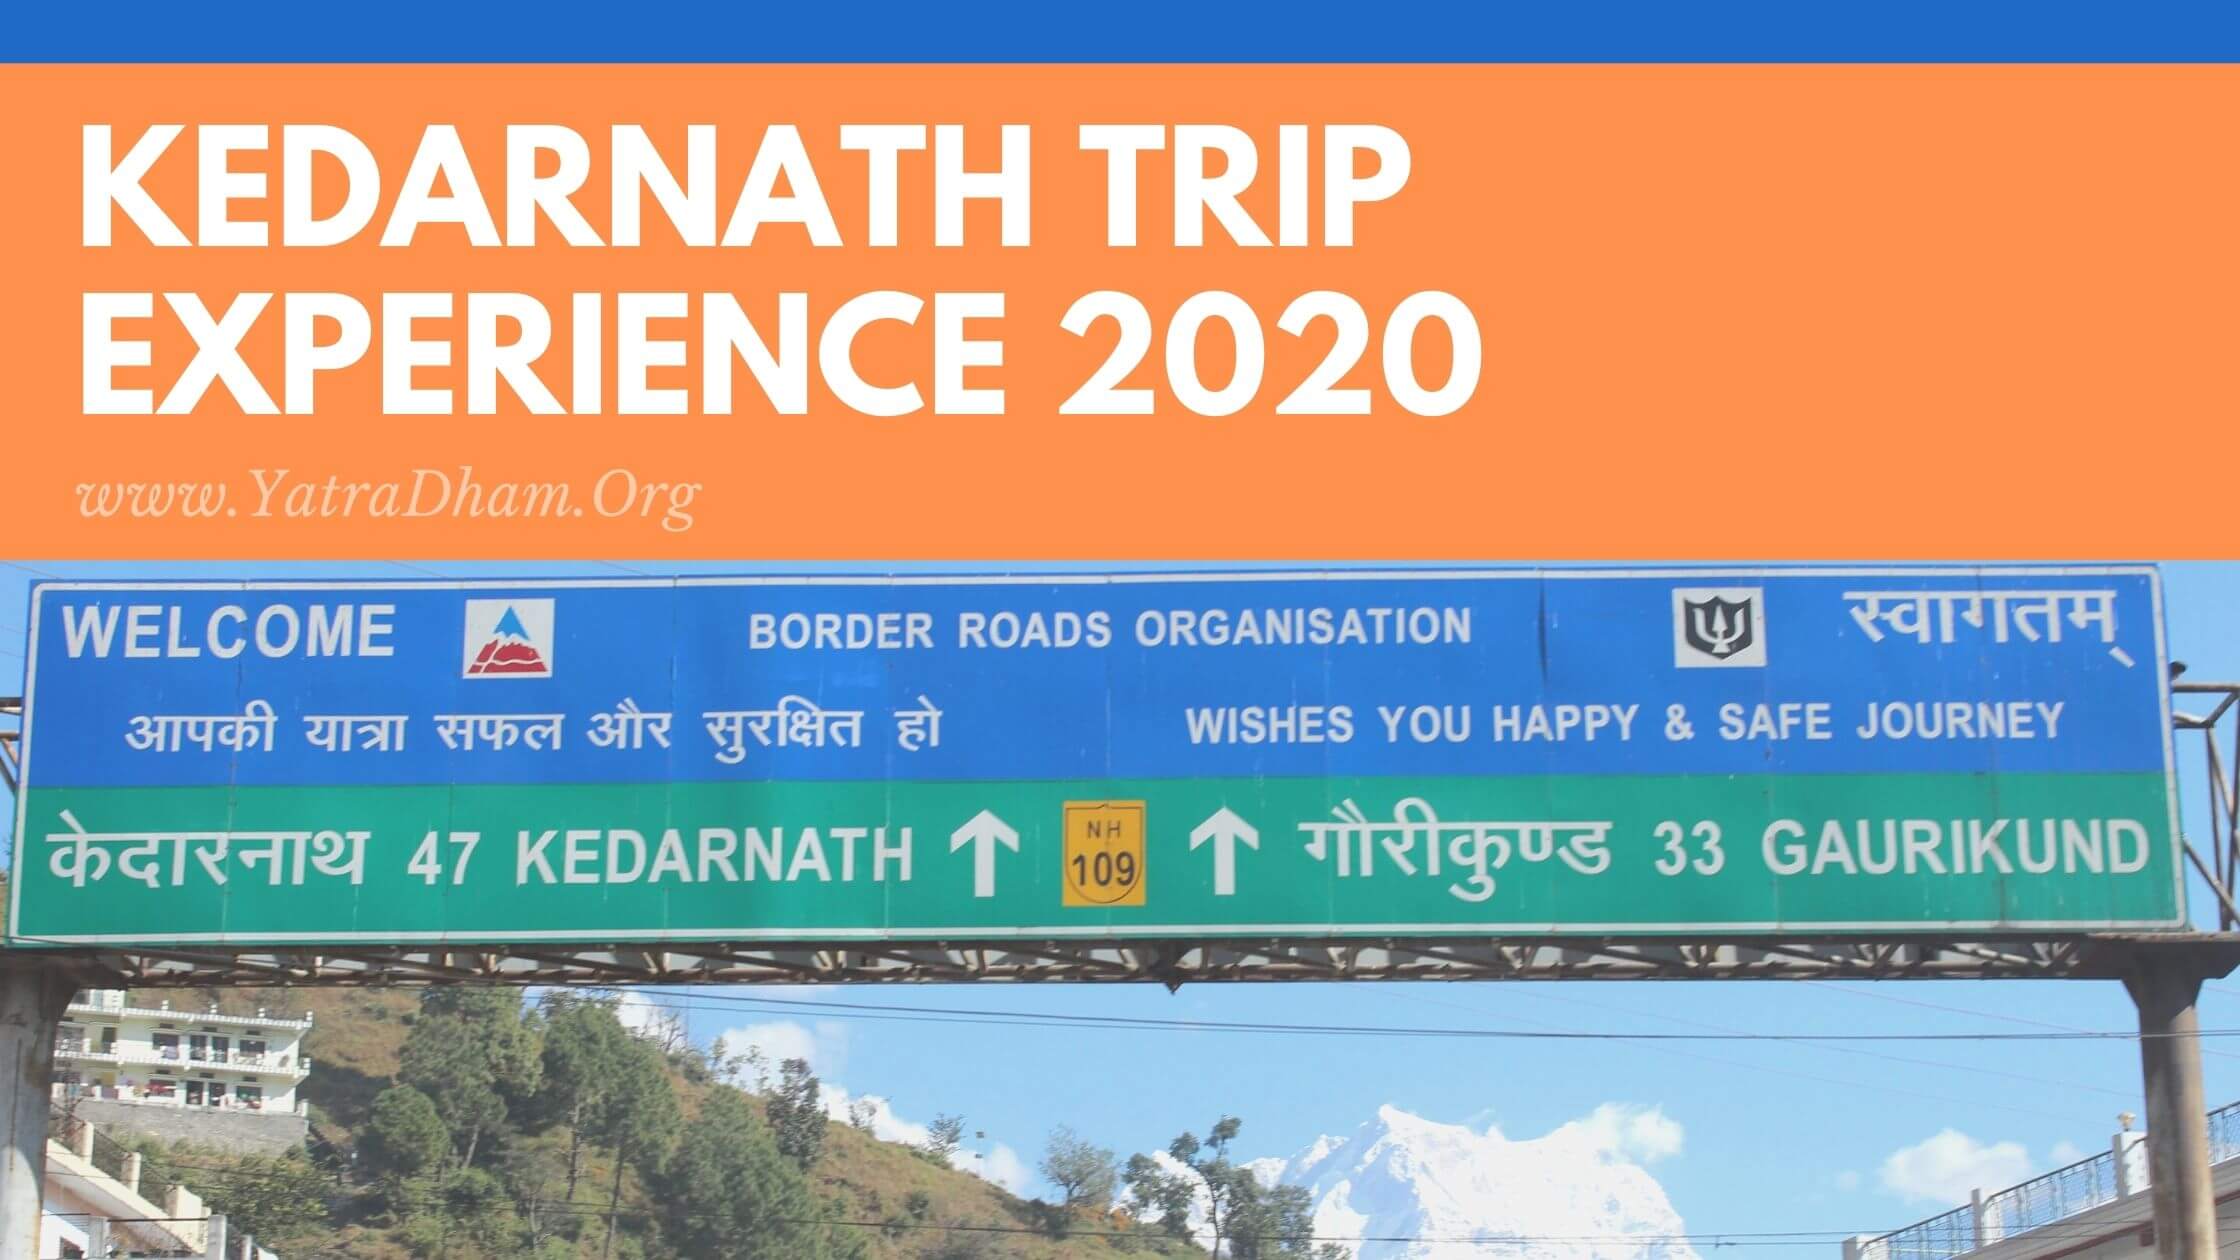 Kedarnath Trip Experience